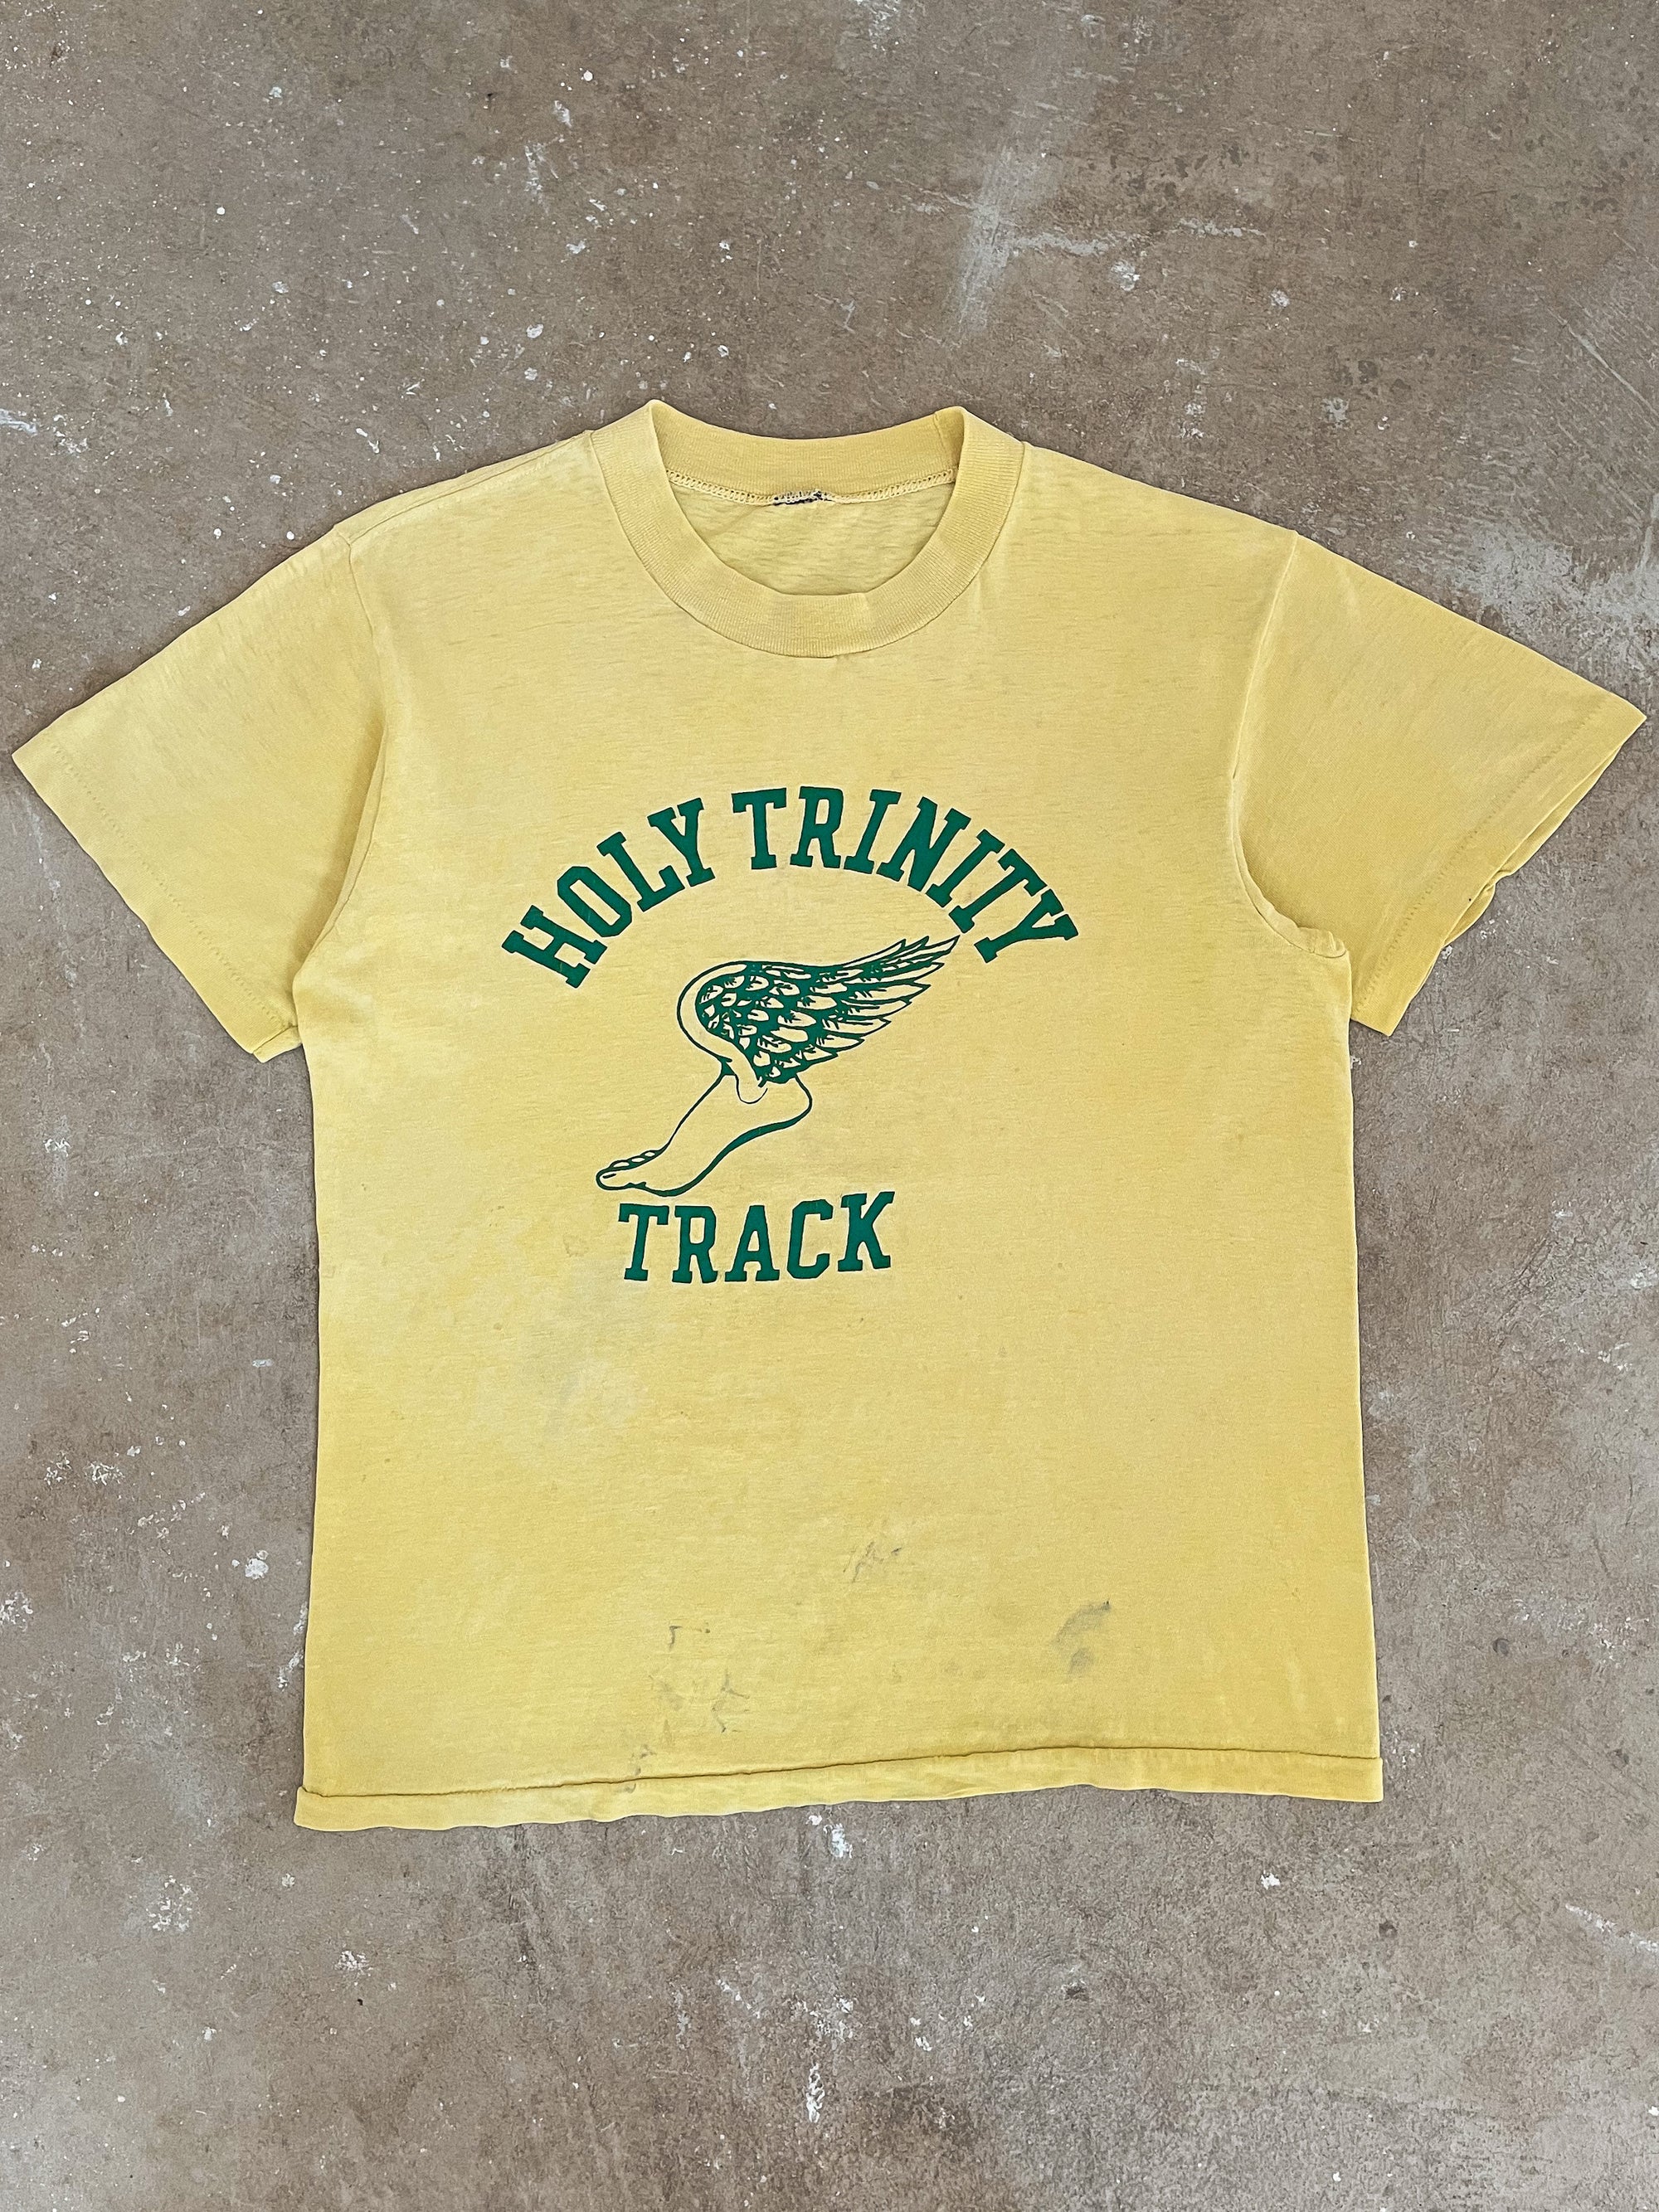 1980s “Holy Trinity Track” Tee (M)